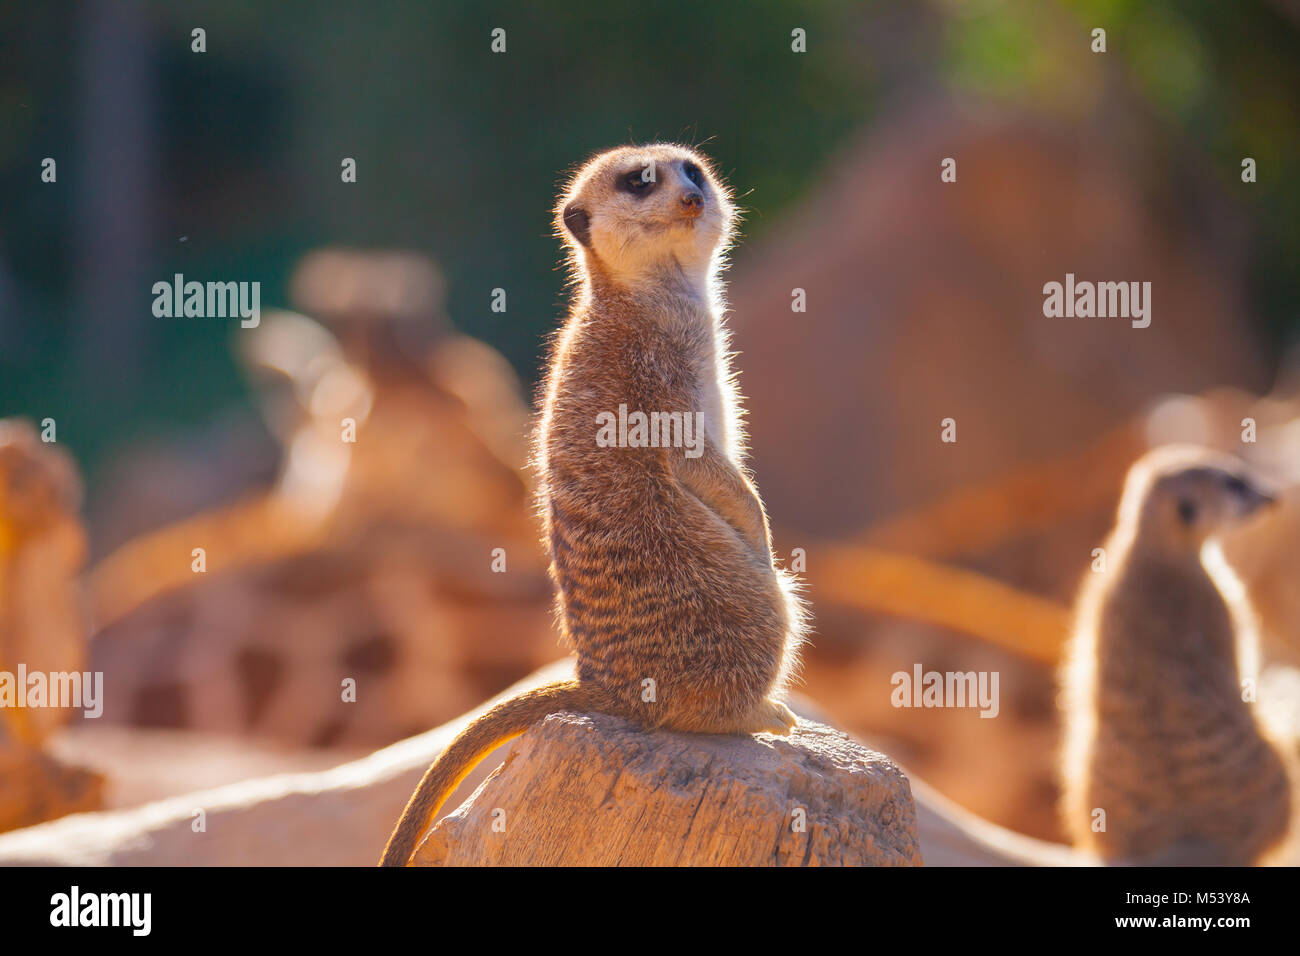 meerkats at sunset Stock Photo